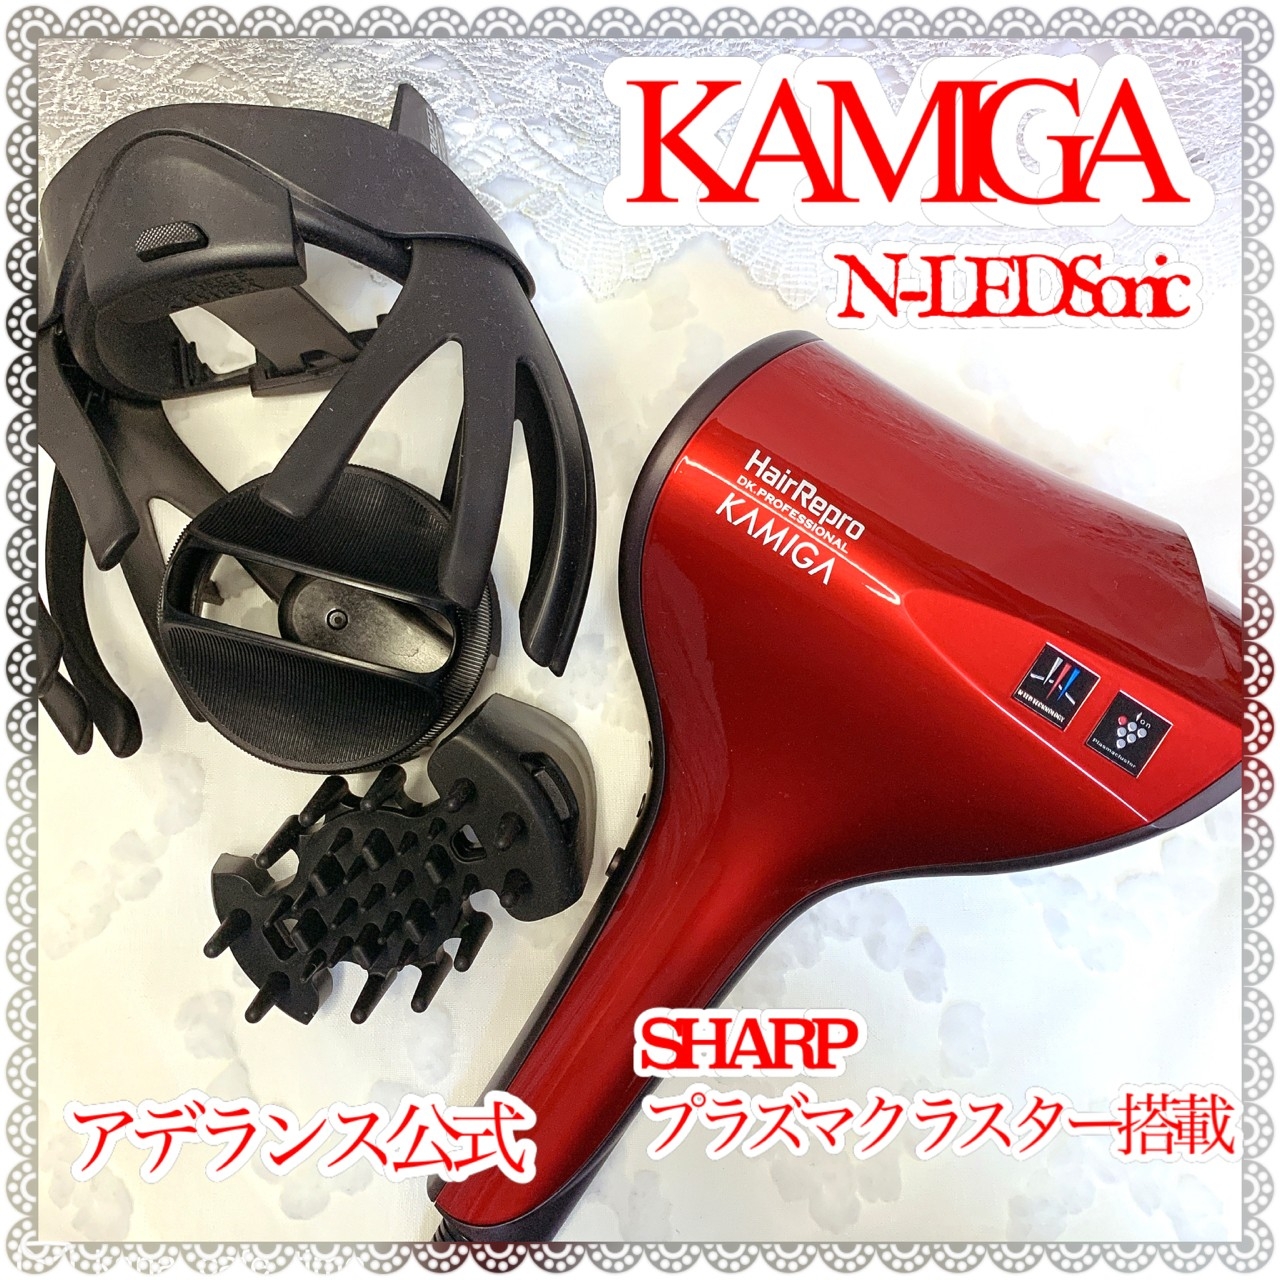 Hair Repro(ヘアリプロ) N-LED Sonic KAMIGA AD-HR03の良い点・メリットに関するkana_cafe_timeさんの口コミ画像1